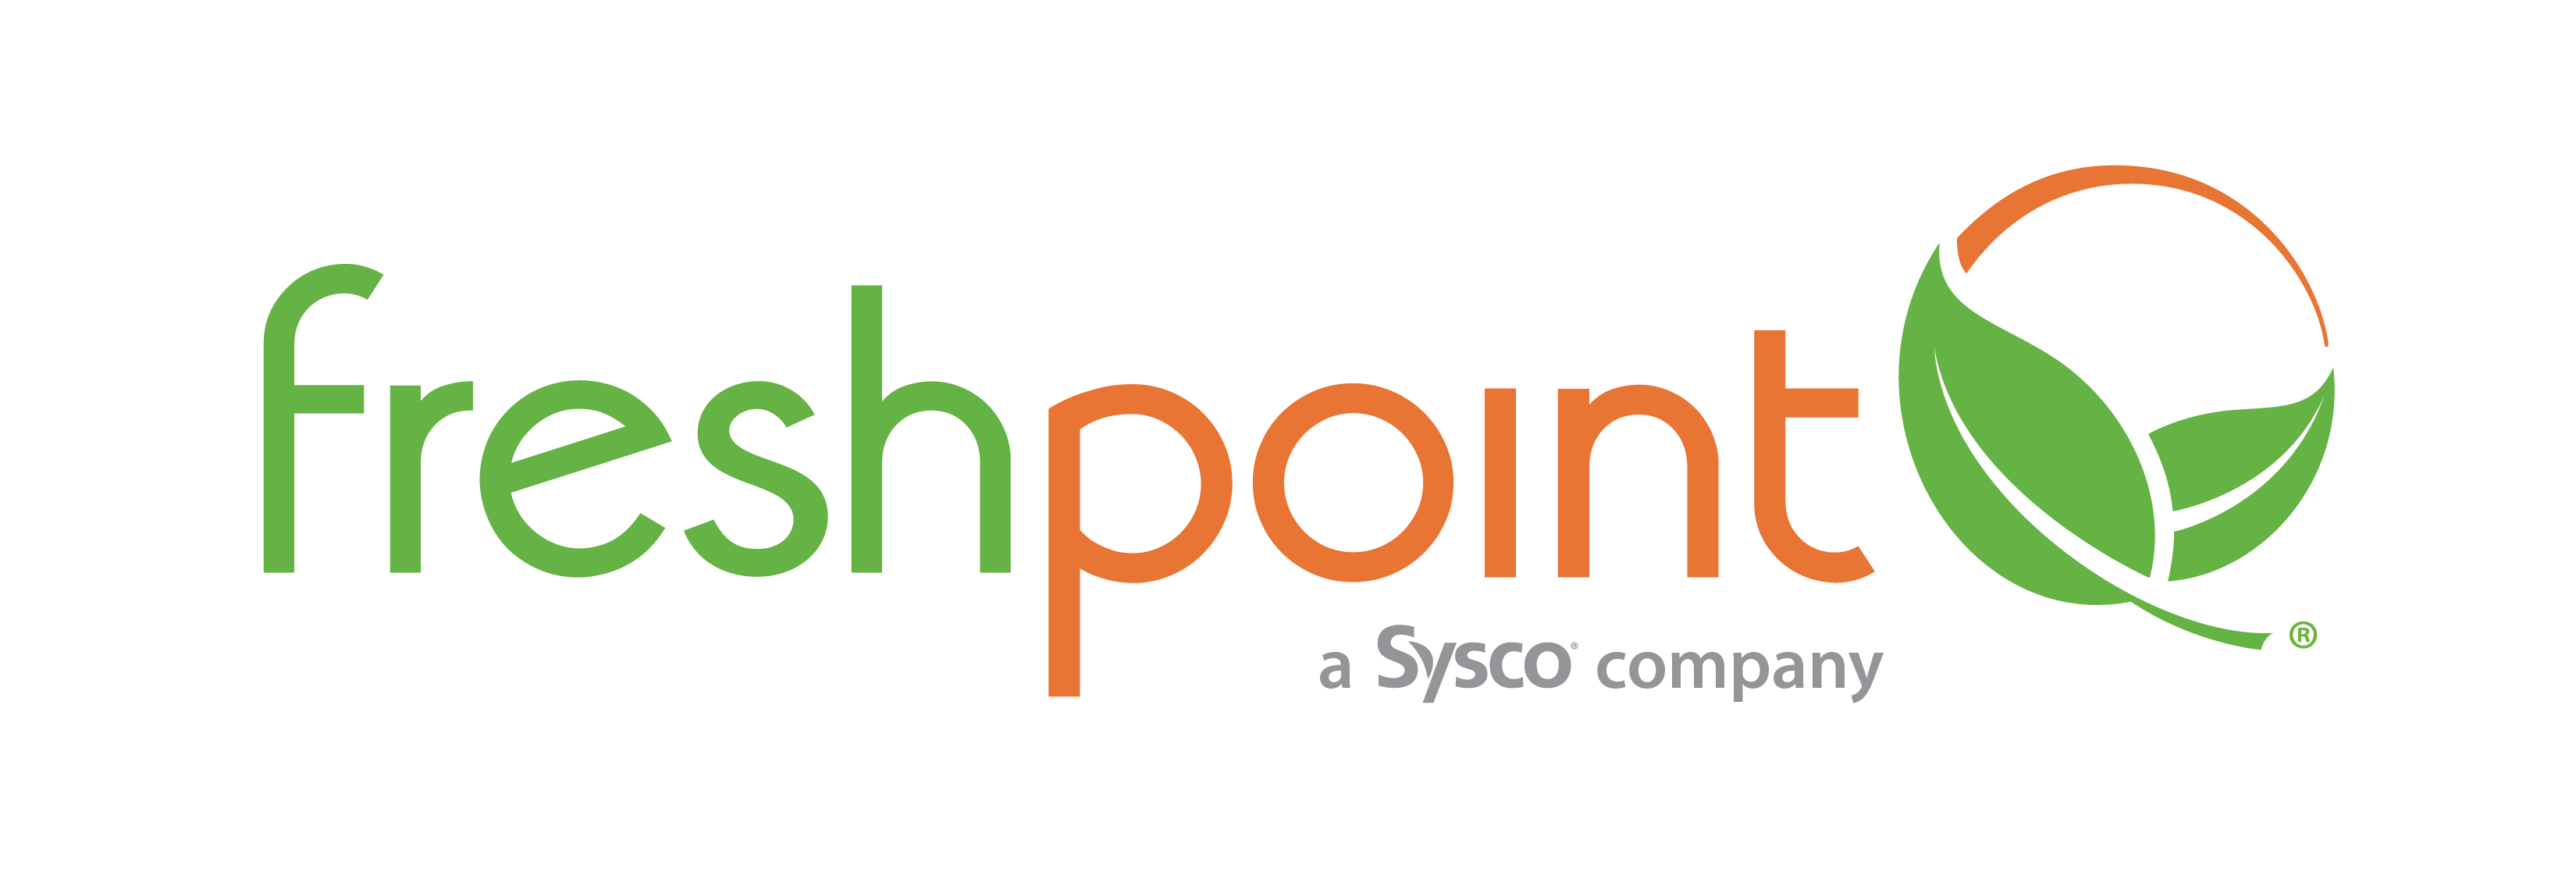 FreshpointLogo_Sysco Company